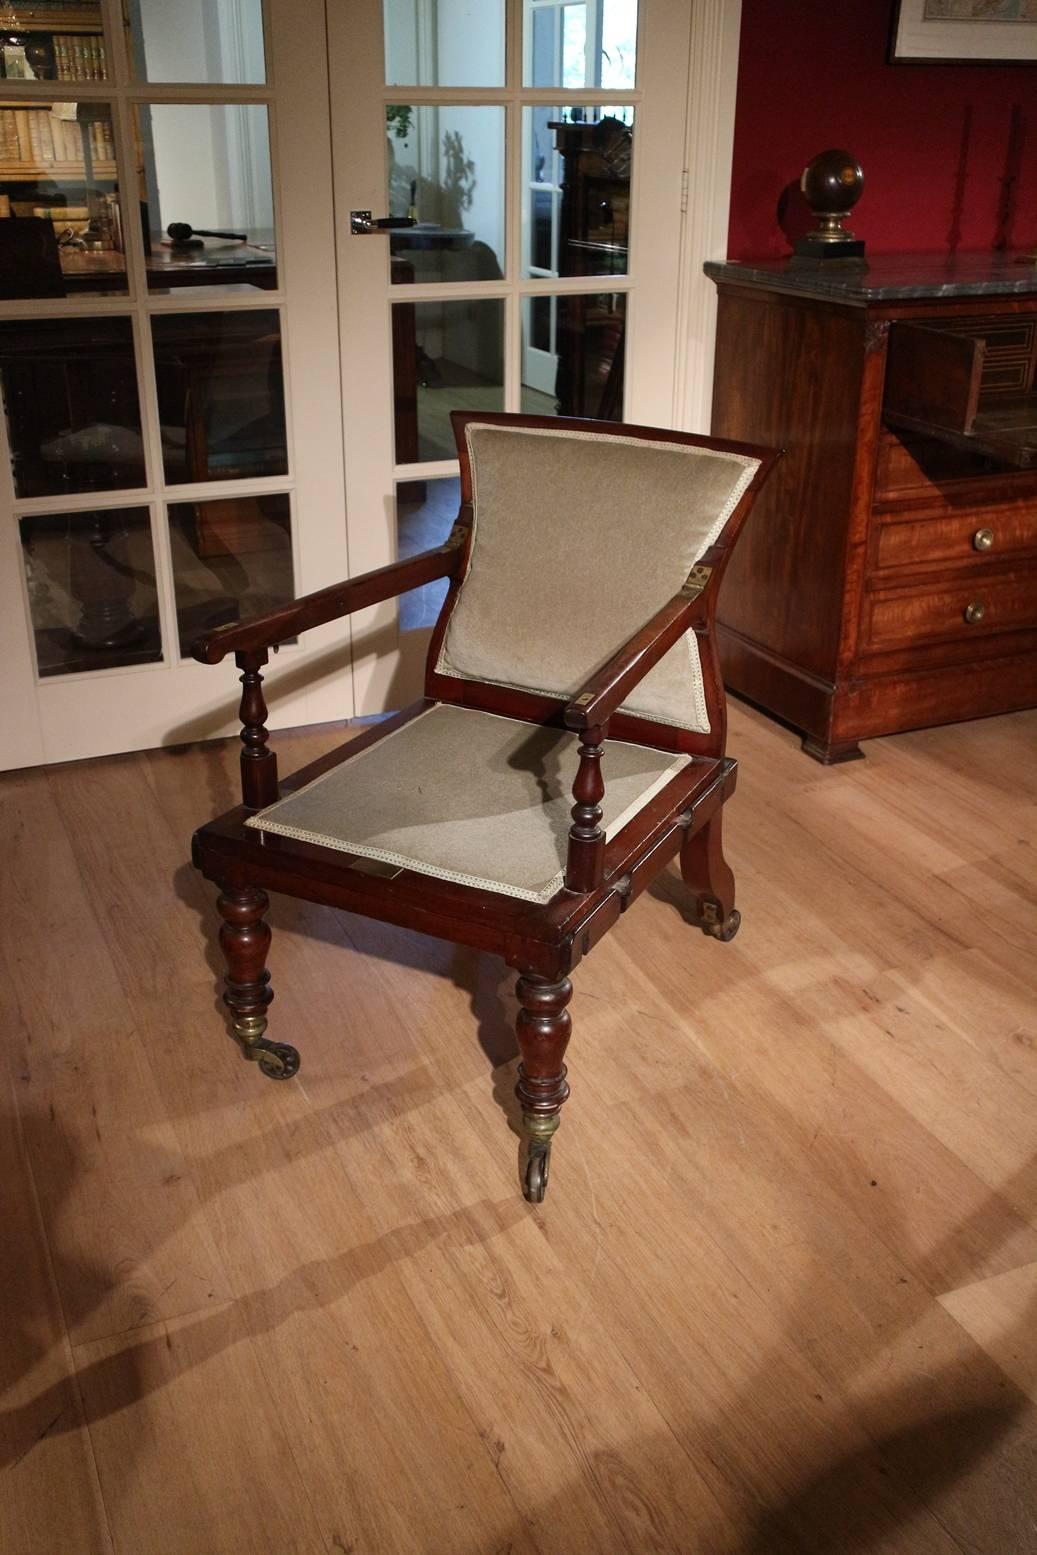 Fauteuil spécial en acajou avec de multiples options. Le fabricant de cette chaise, J. Alderman, était connu comme le créateur de meubles inventifs à emporter en voyage et pour les invalides. Cette chaise en est un bon exemple. Des supports en fer